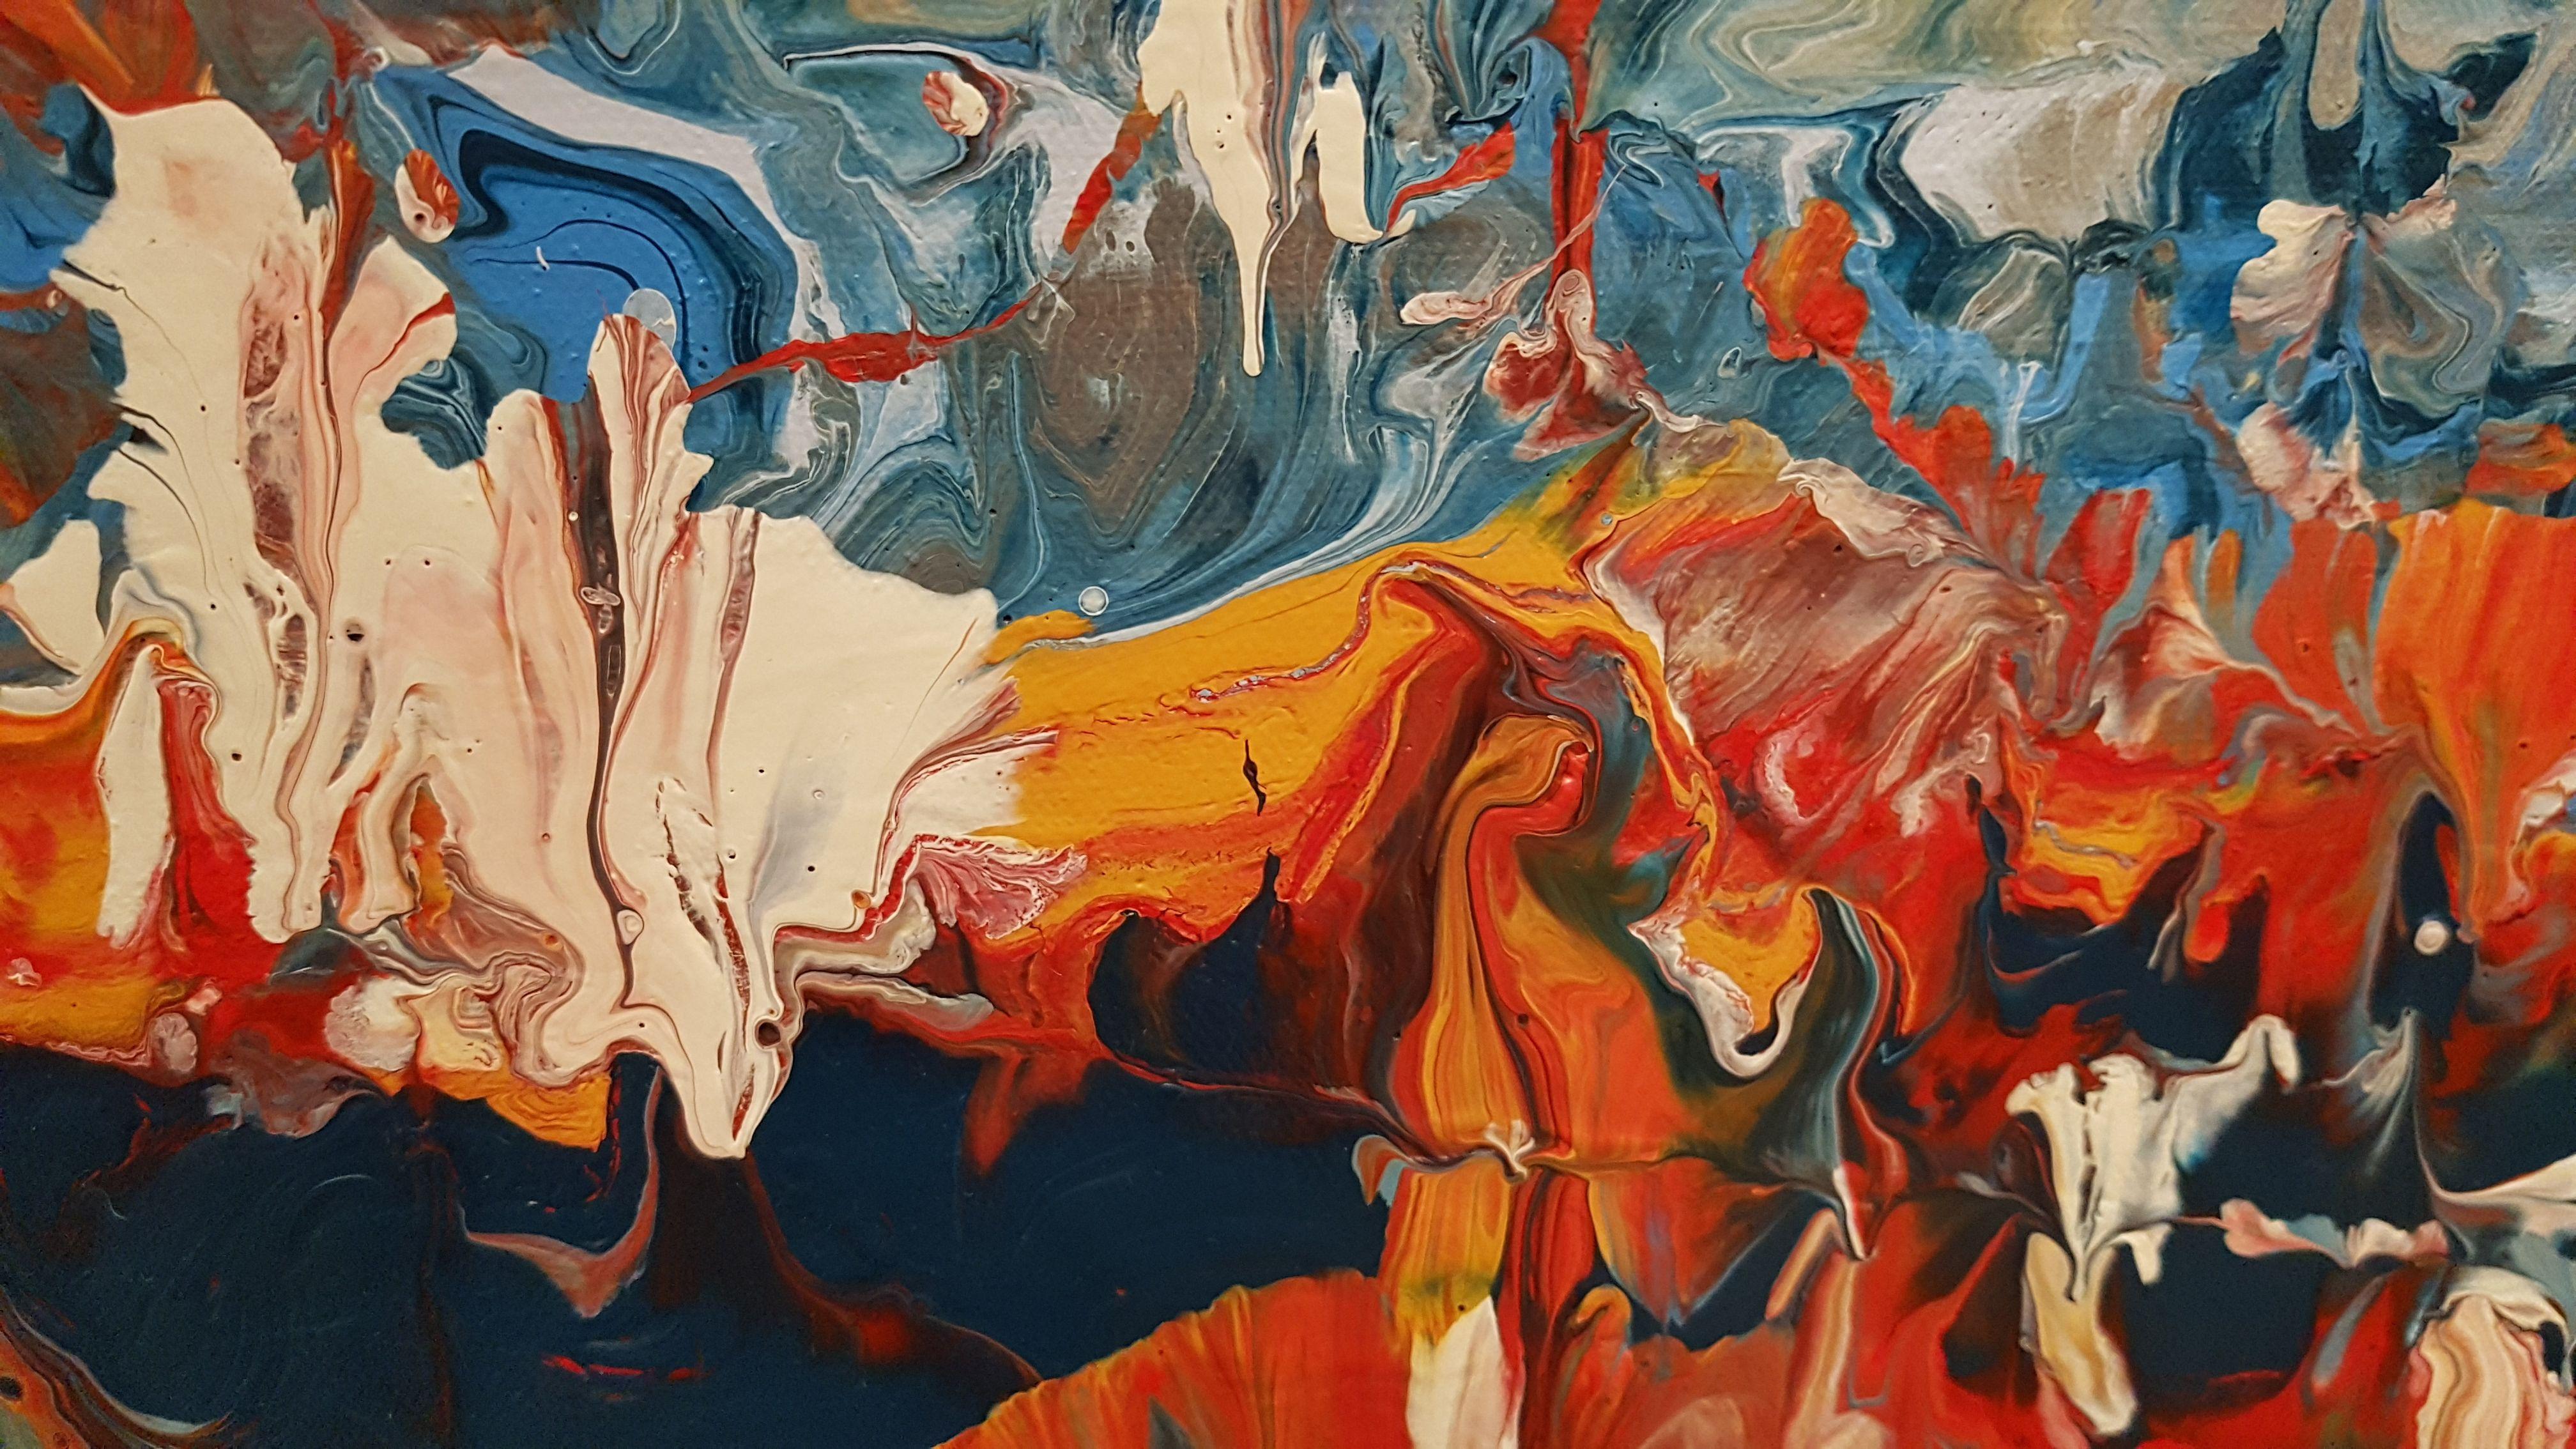 Ein wunderschönes abstraktes Bild mit fließender Bewegung, Textur und einer einzigartigen Gegenüberstellung von Weiß, Blau und komplementären Rot- und Orangetönen. Das einzigartige Stück symbolisiert, wie sich unser Leben mit dem Wechsel der